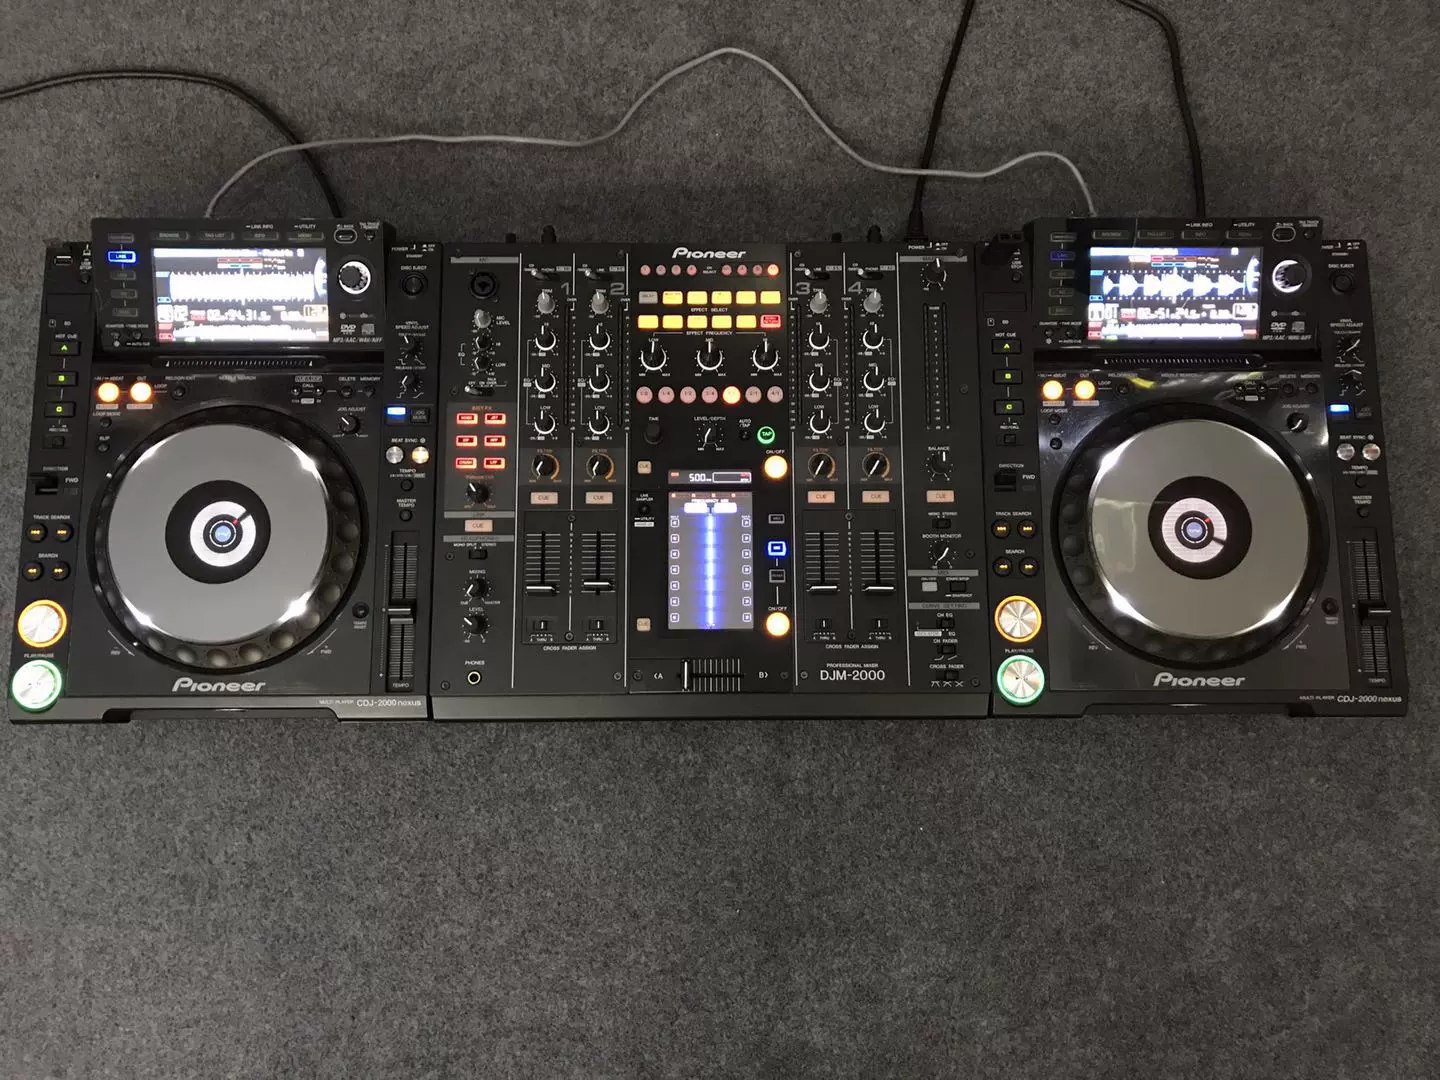 先锋2000nexus打碟机DJM-2000混音台酒吧DJ 内置声卡4通道使用-Taobao